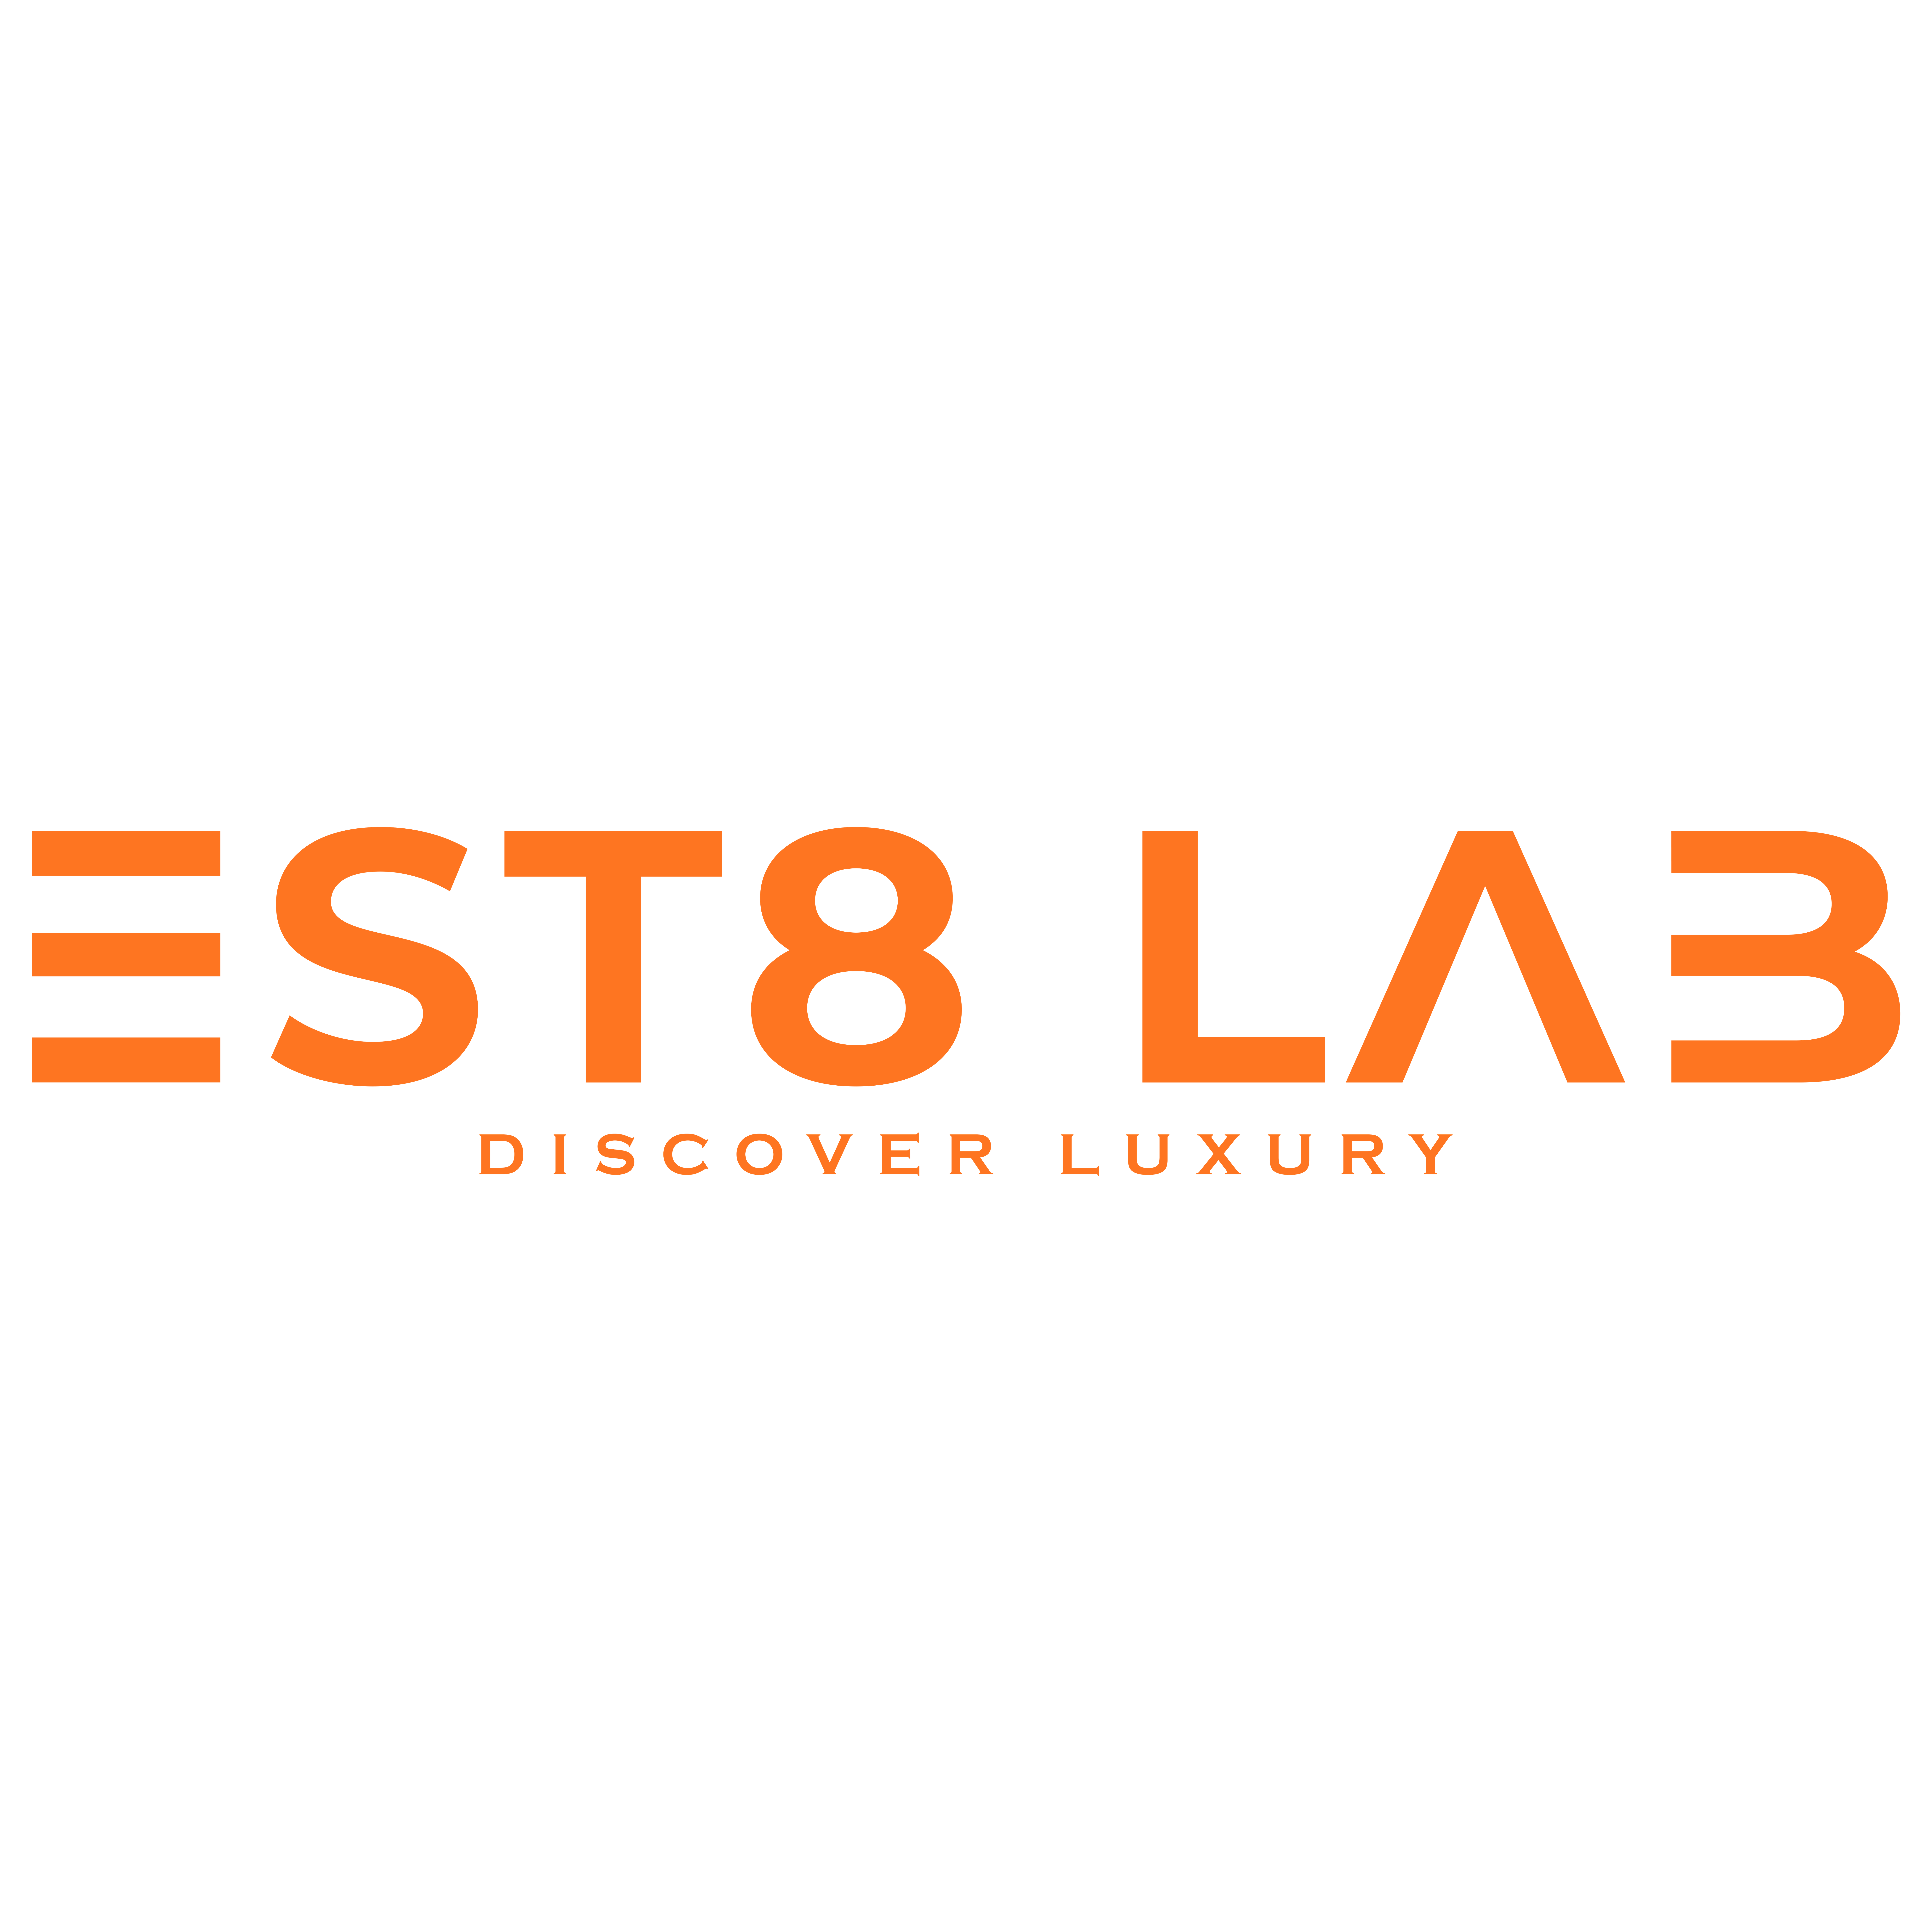 Est8 Lab